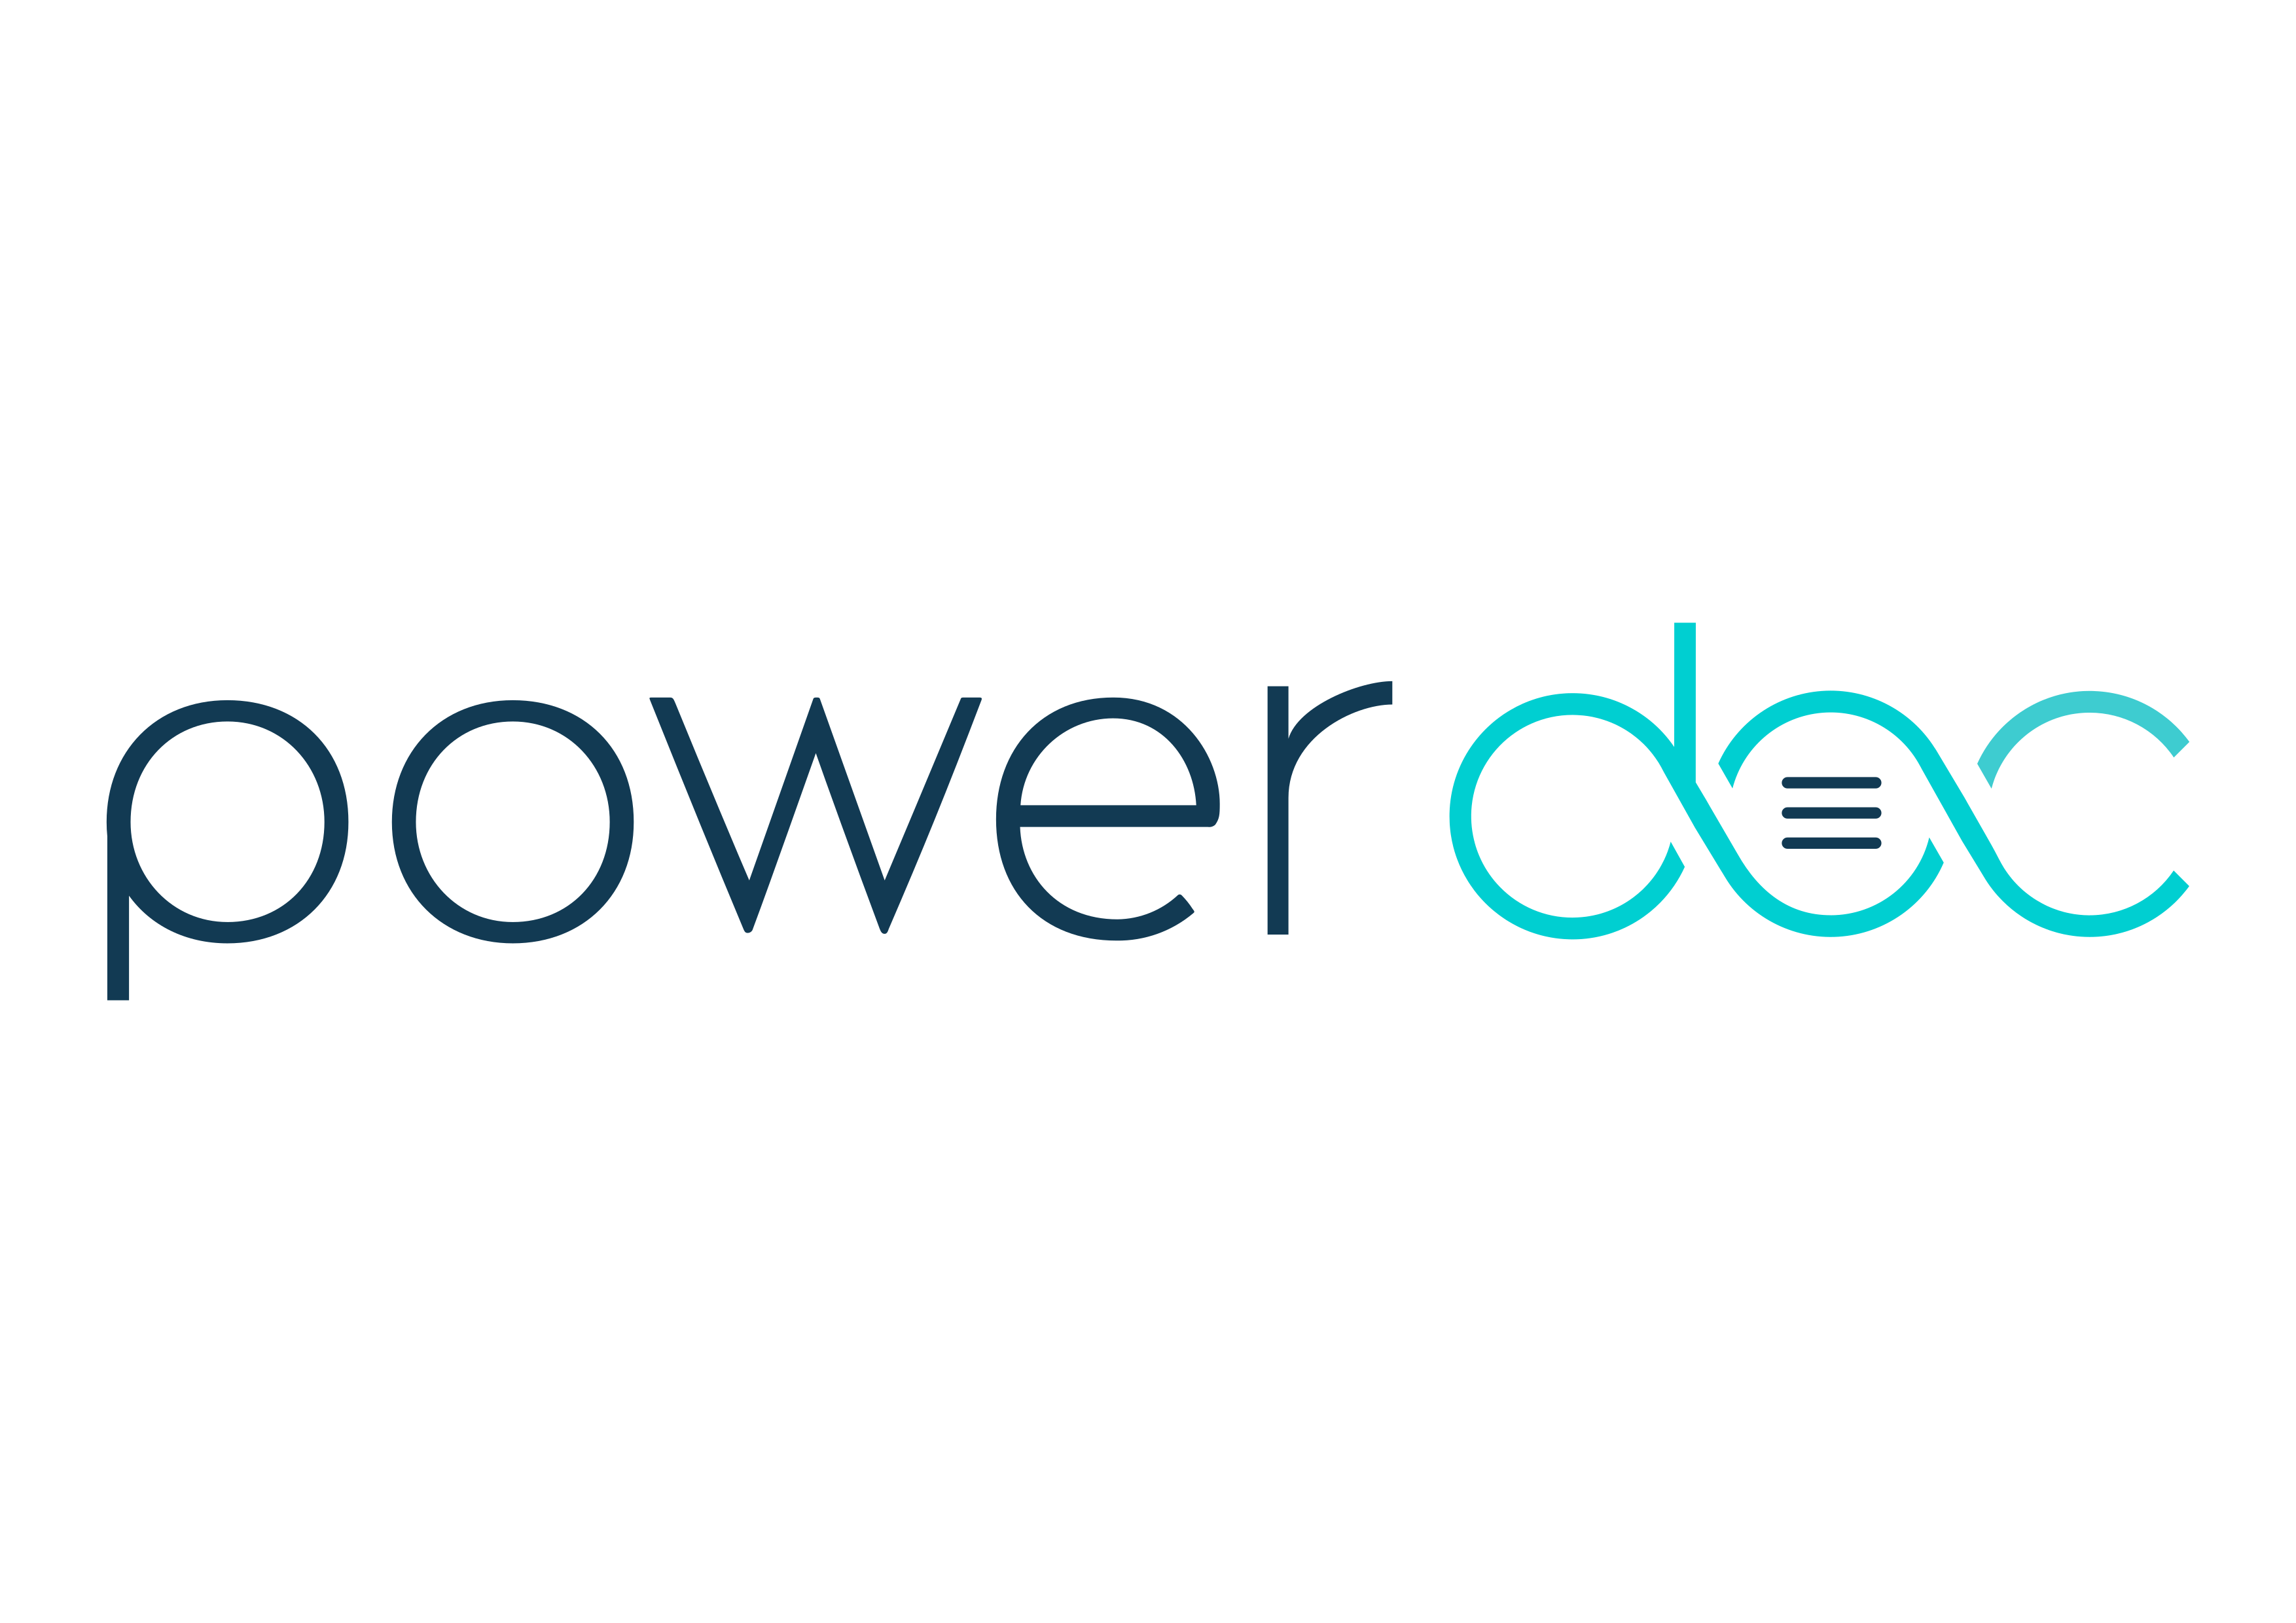 Powerdoc logo